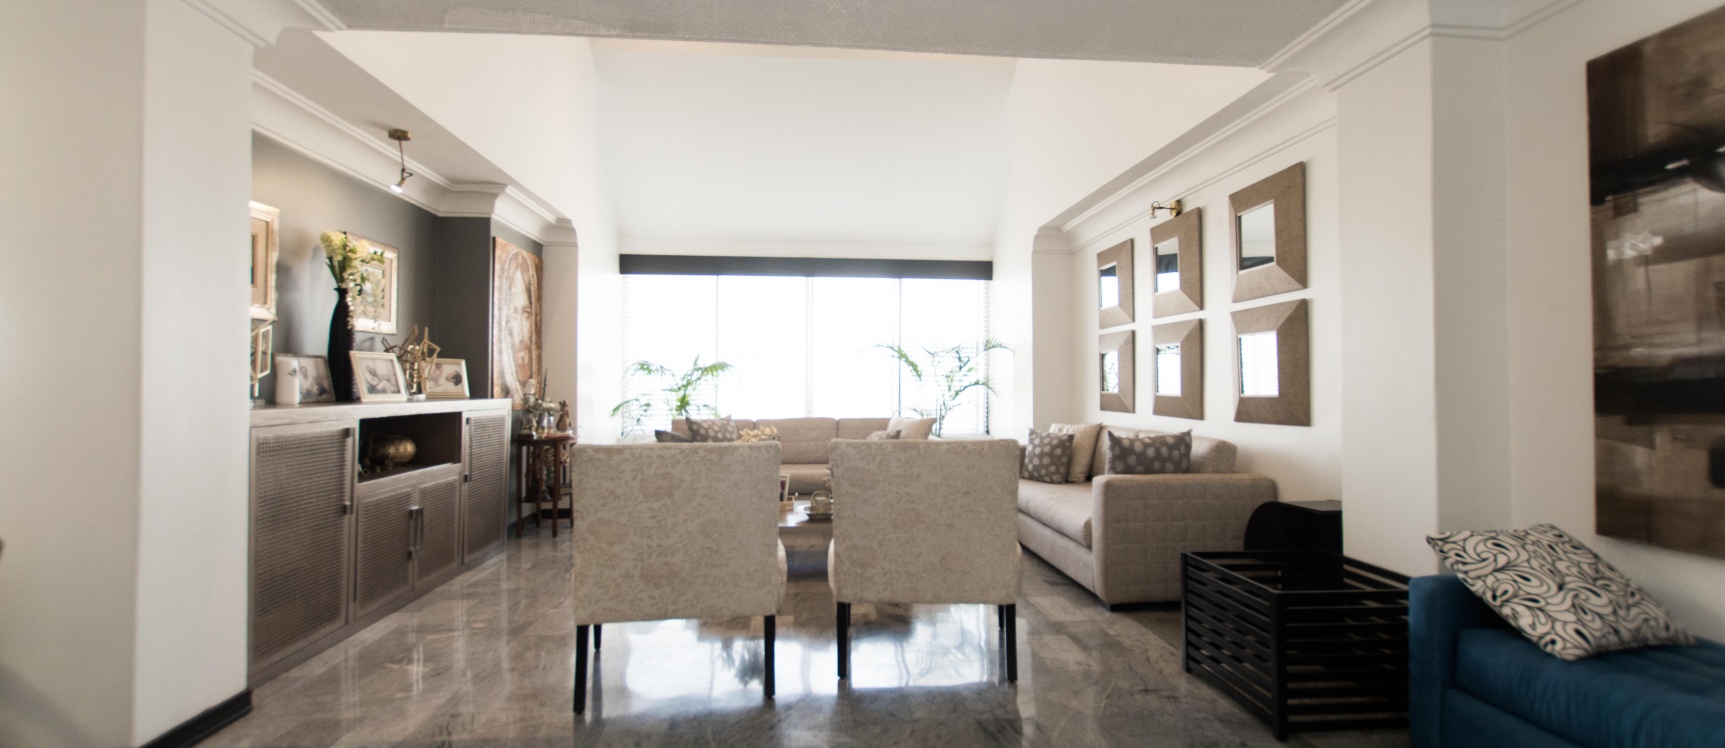 GeoBienes - Moderno departamento de 2 pisos en venta, Edificio Marcus, Lomas de Urdesa - Plusvalia Guayaquil Casas de venta y alquiler Inmobiliaria Ecuador